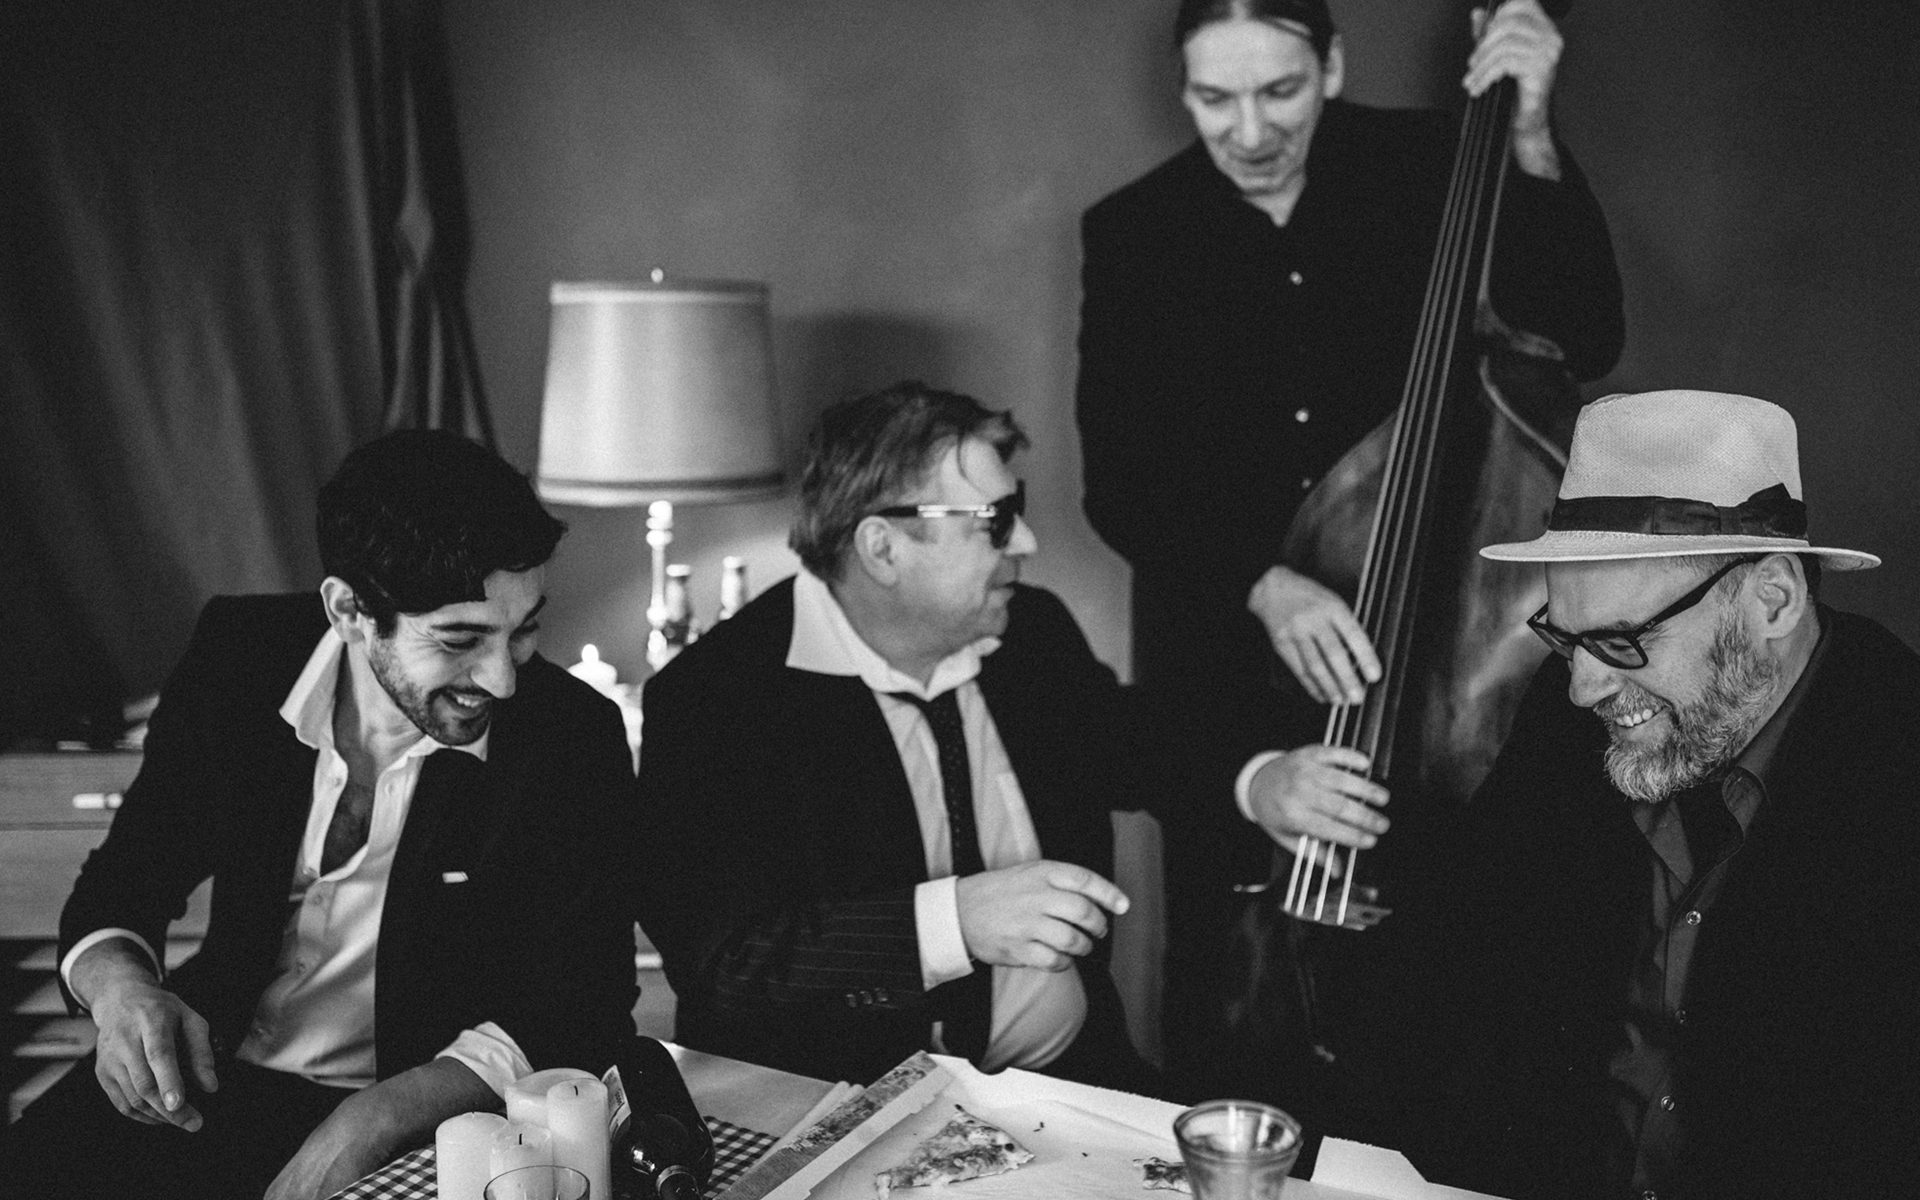 Quartetto Corleone Canzone Italiana Liveband Ansbach Nuernberg Italienische Musik Rocknroll Spiegelhof Fotografie